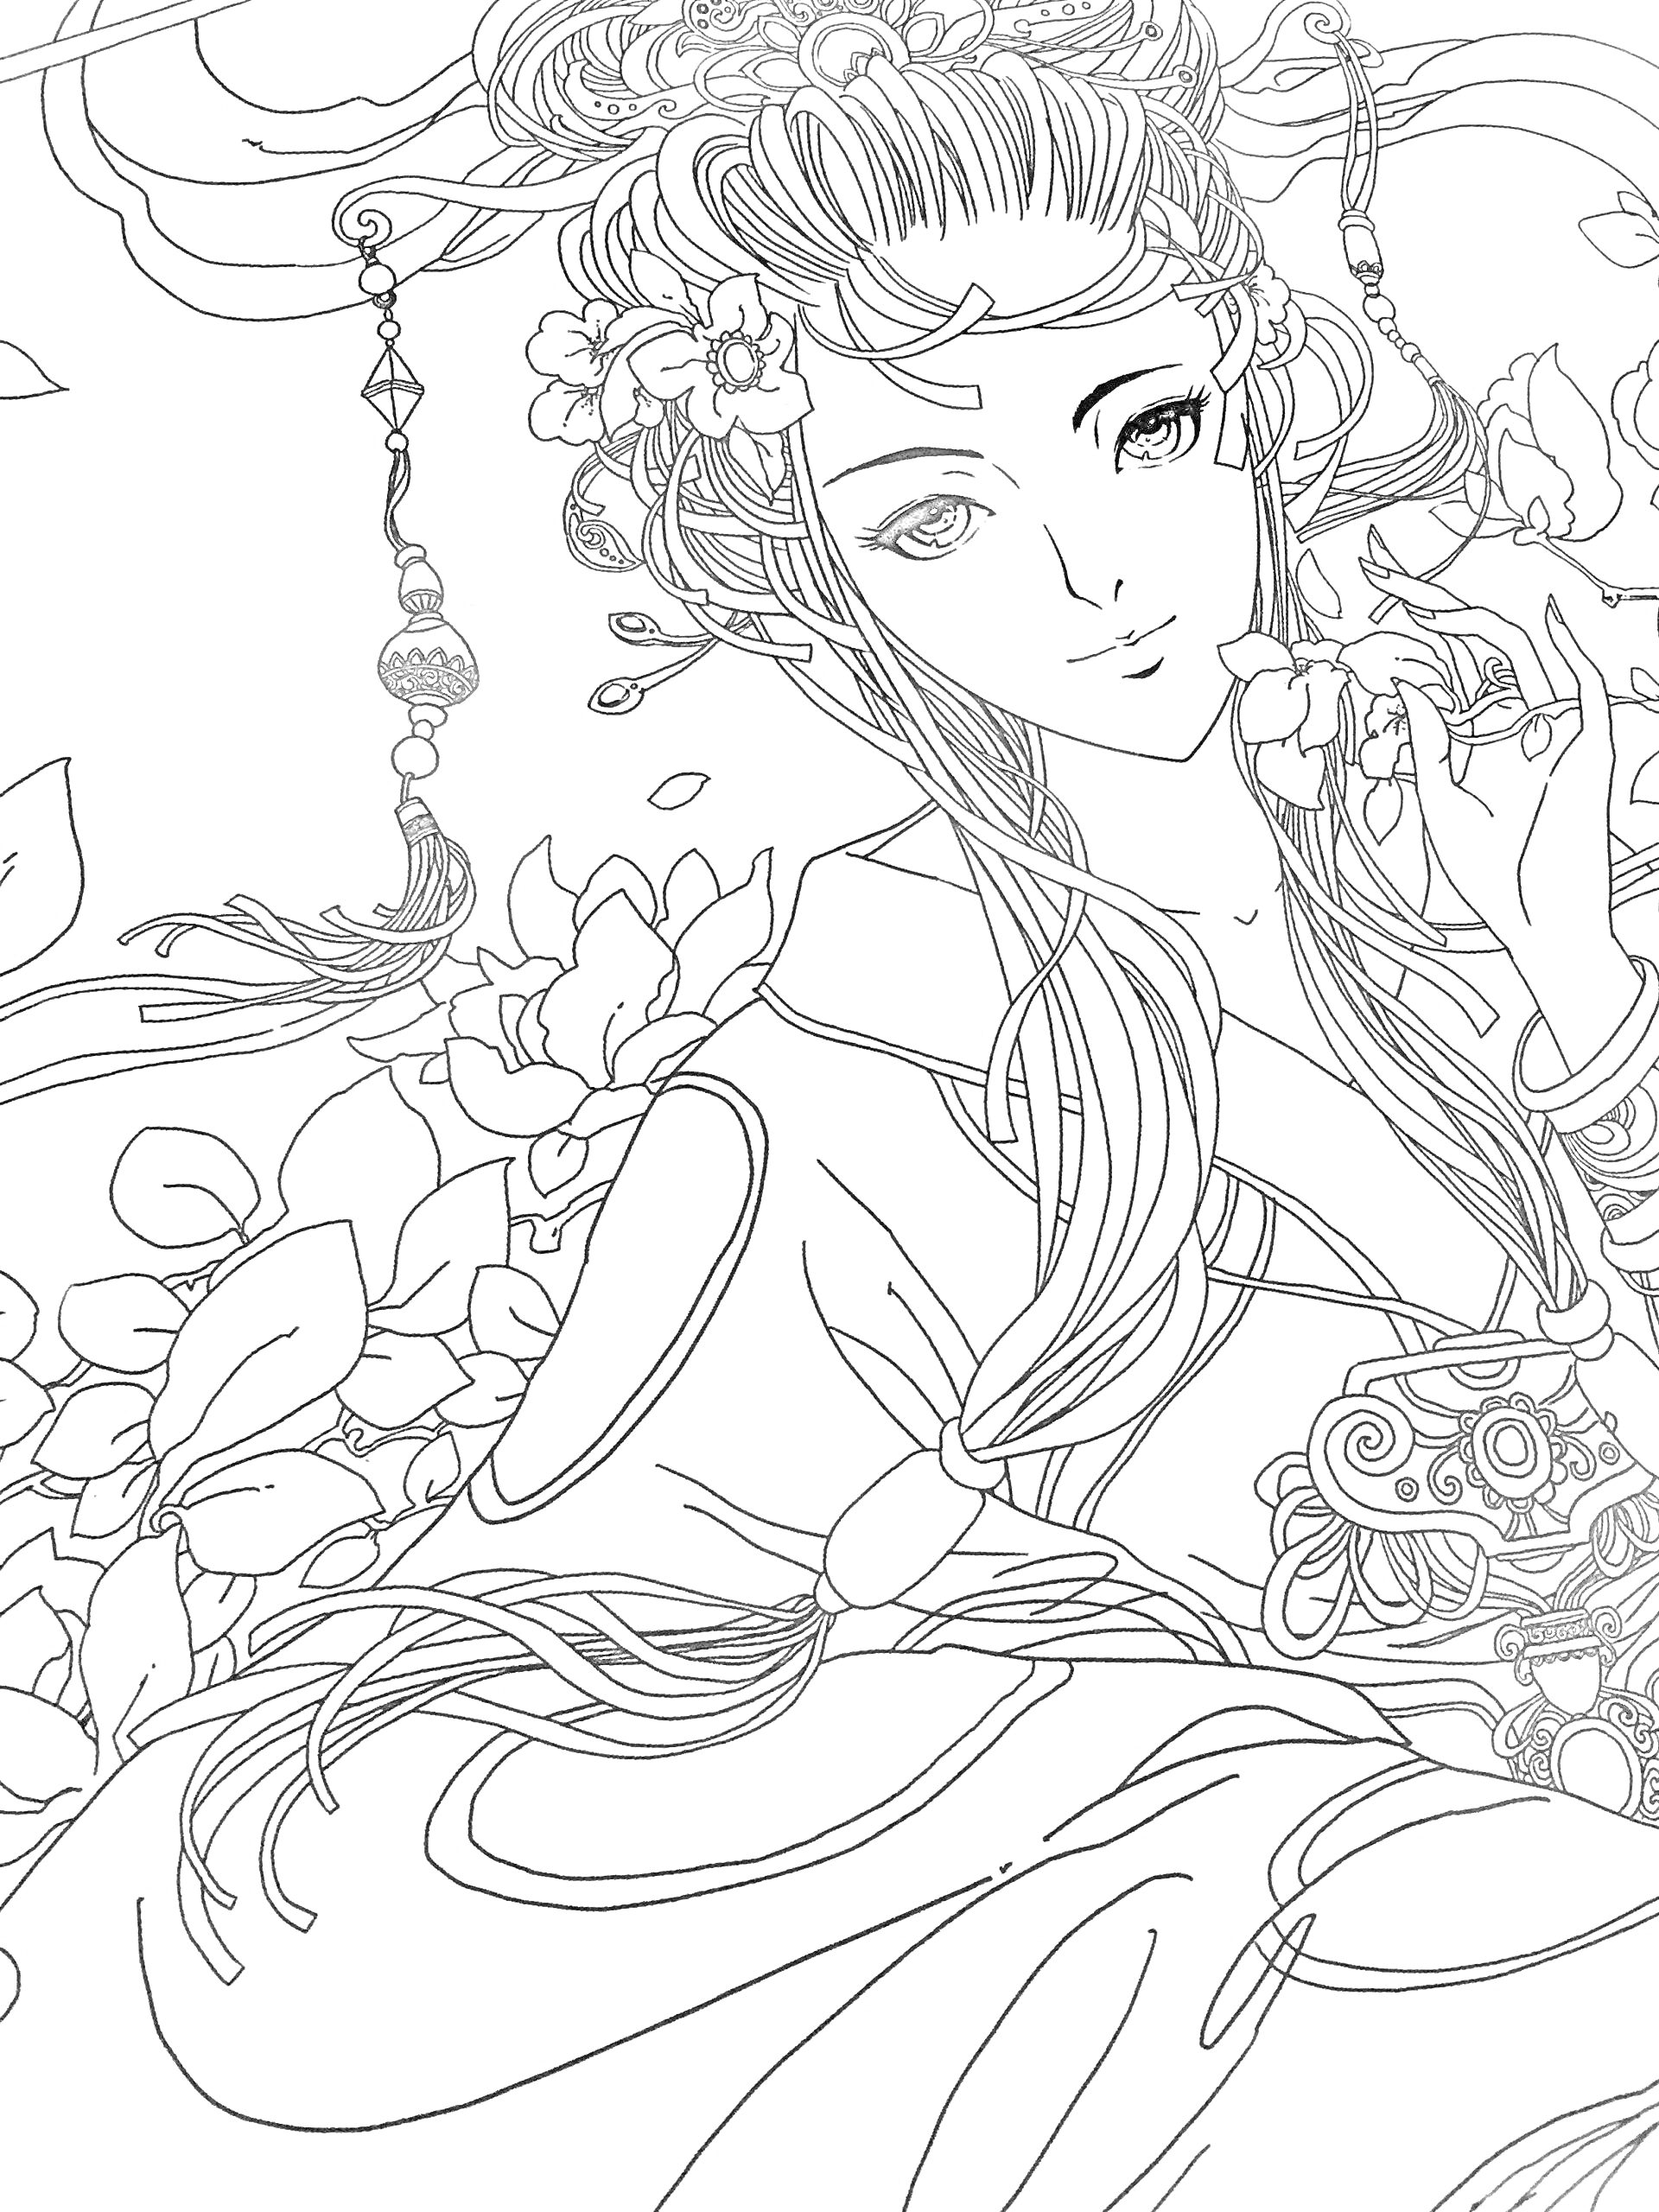 Аниме девушка с цветами в волосах и азиатским орнаментом